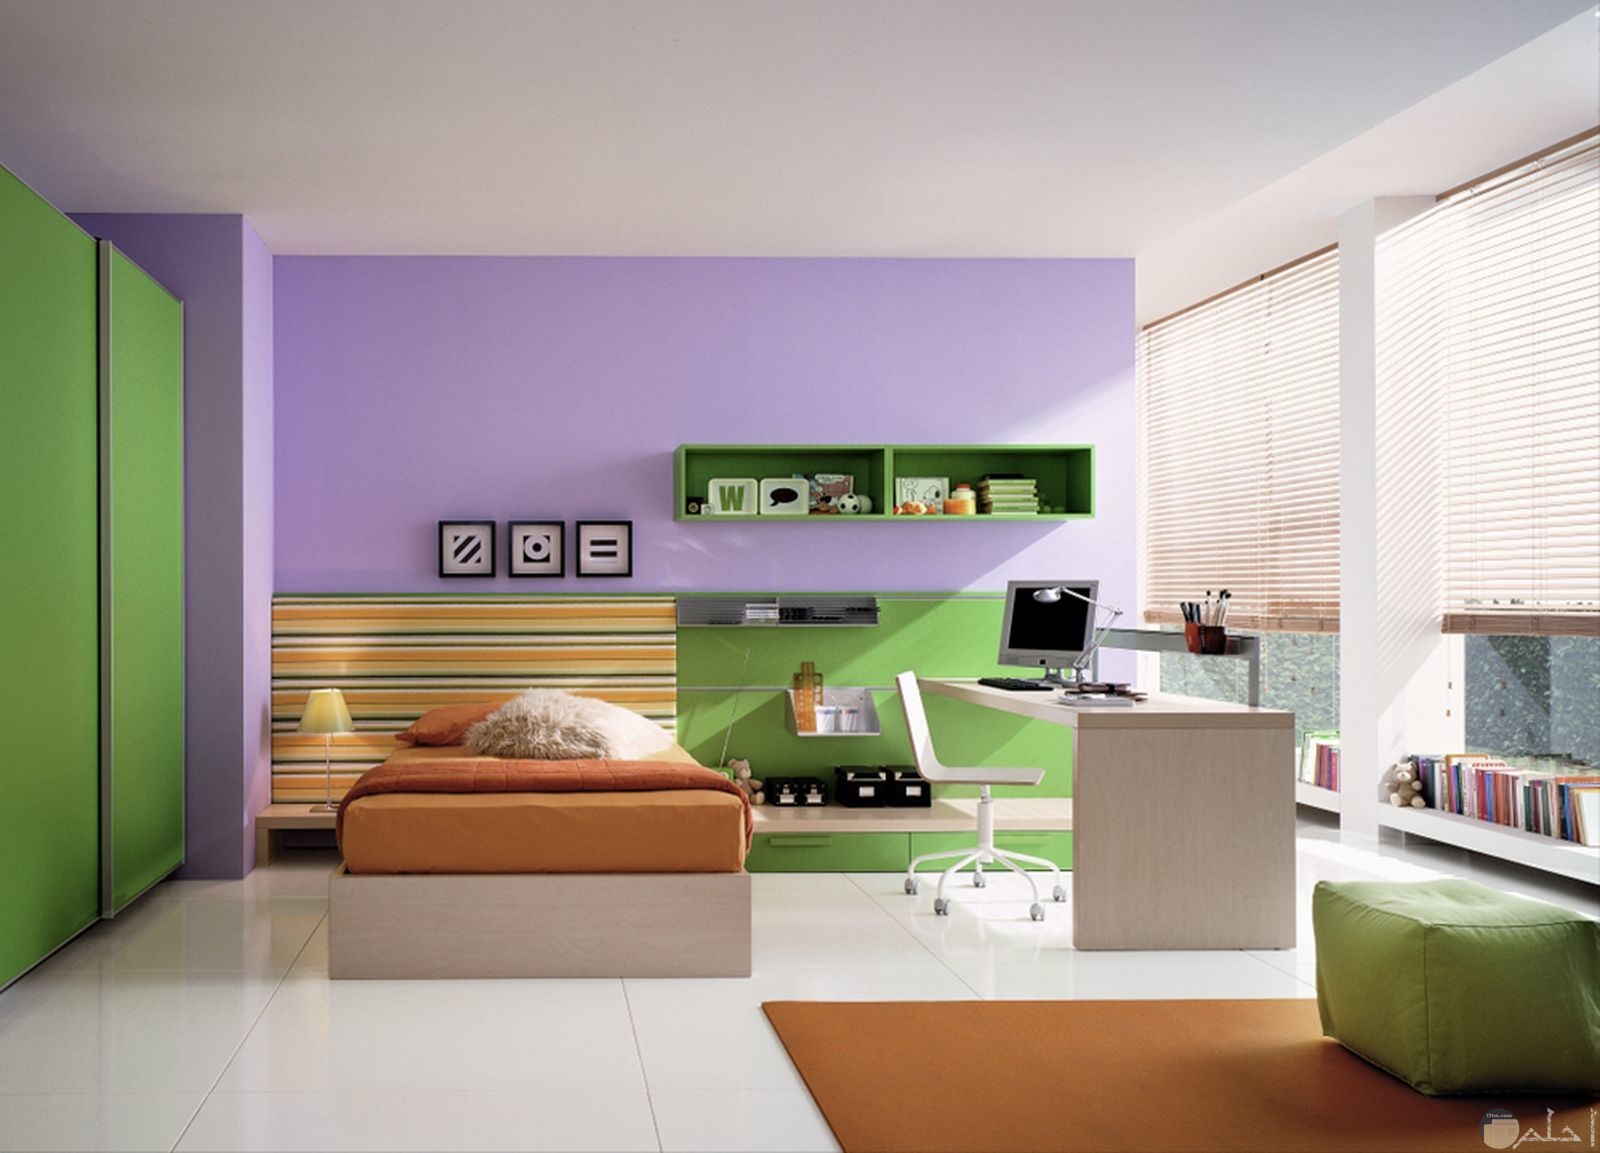 غرفة نوم جميلة وهادئة للأطفال مع تناسق الألوان فيها